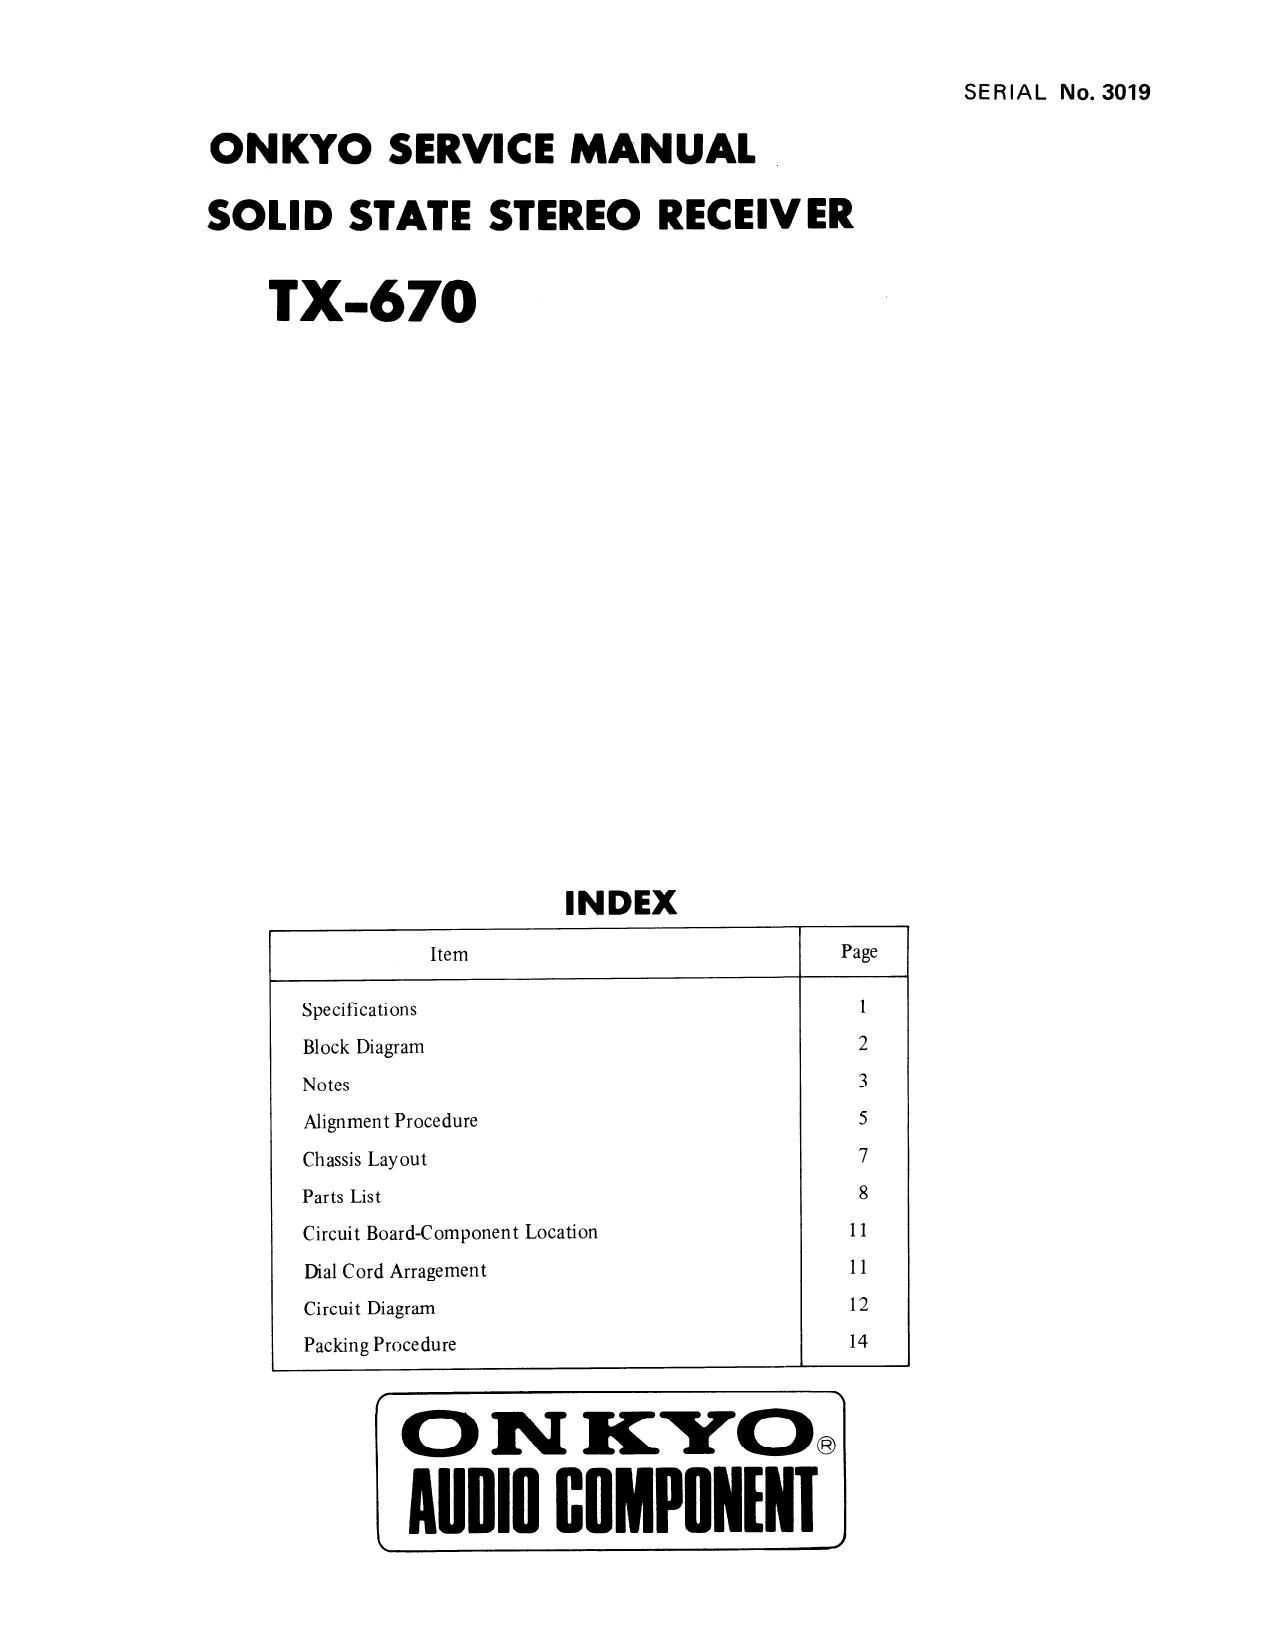 Onkyo TX 670 Service Manual